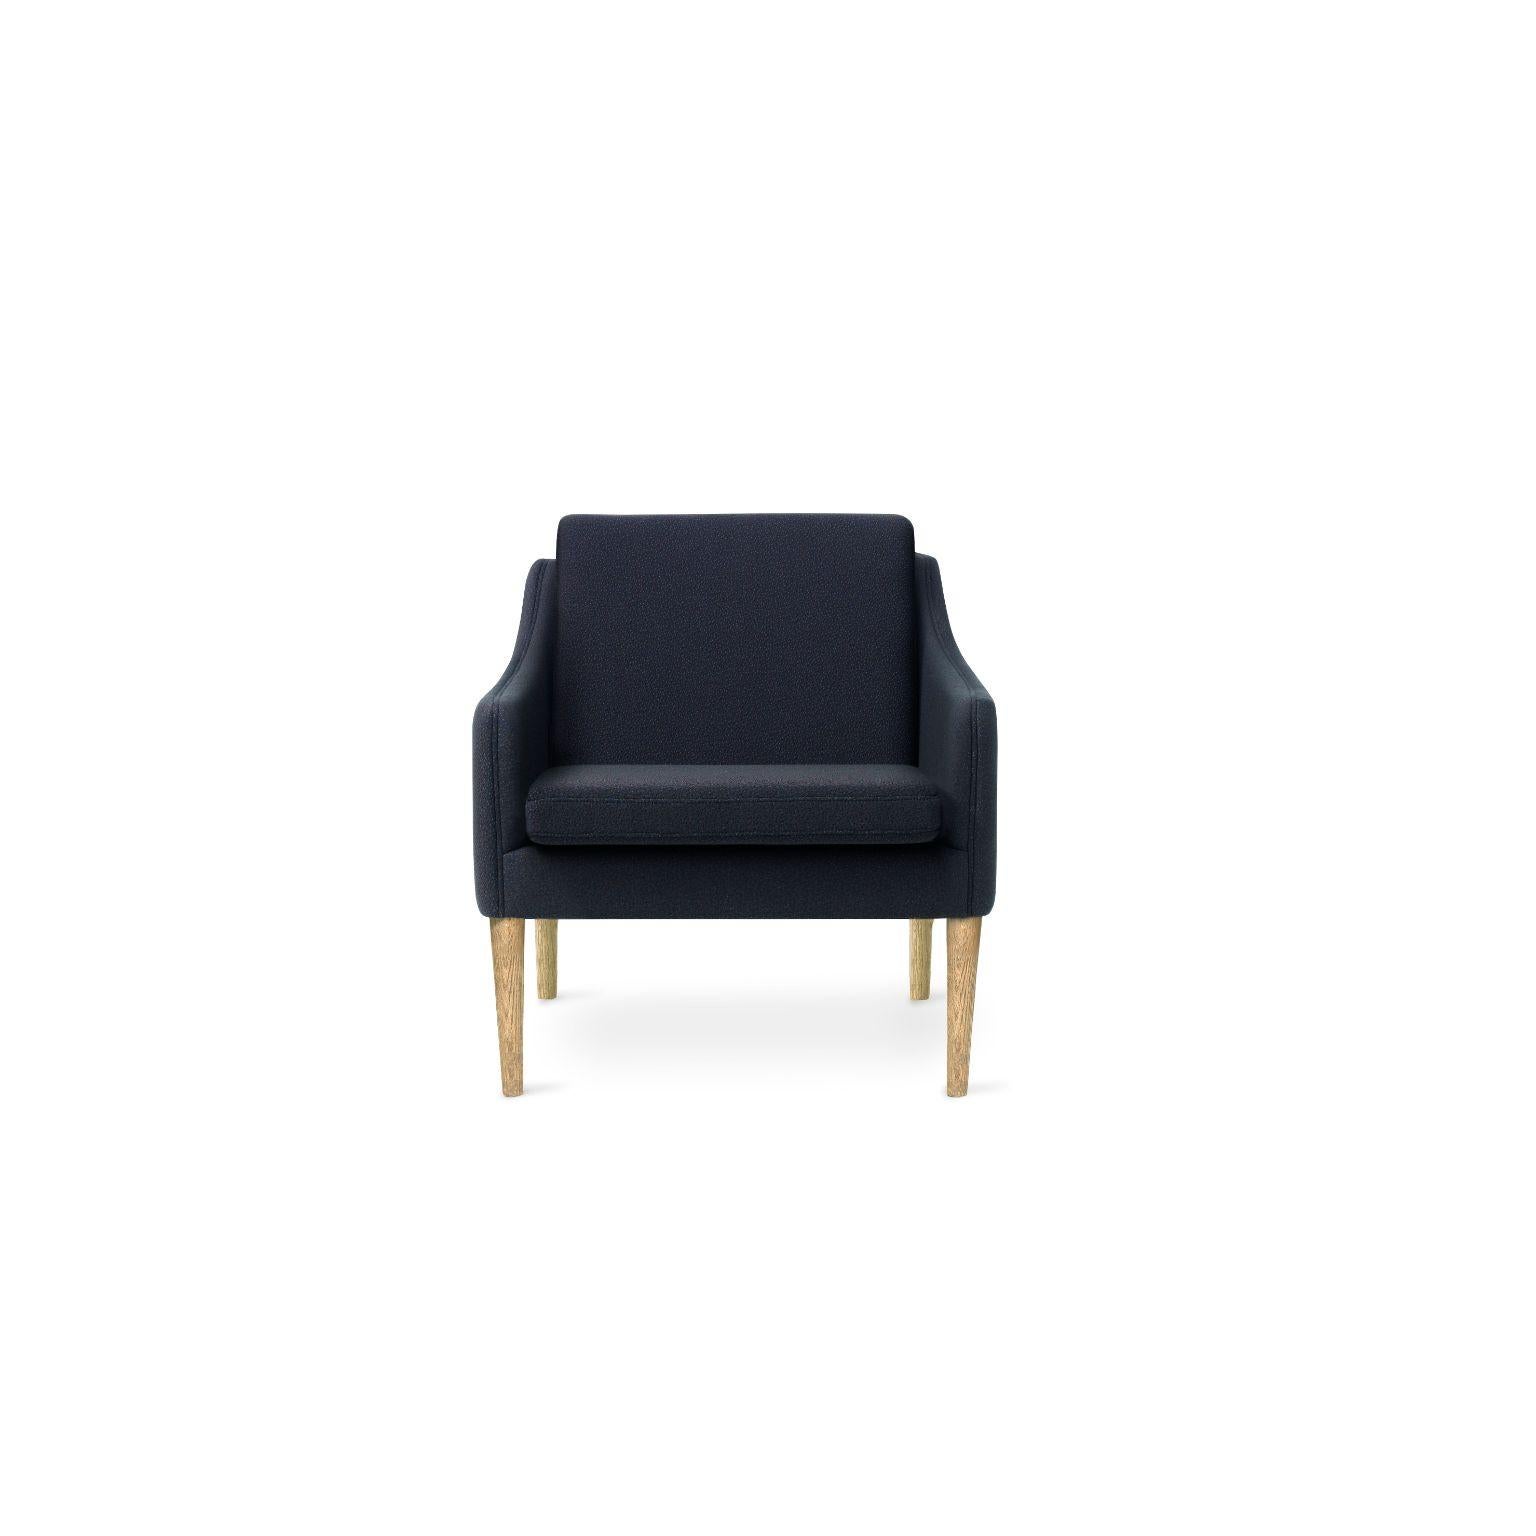 Mr. Olsen lounge chair sprinkles massiver räuchereiche mitternachtsblau by Warm Nordic
Abmessungen: T 81 x B 79 x H 78 cm
MATERIAL: Textilpolsterung, Schaumstoff, Federsystem, Eiche
Gewicht: 27 kg
Auch in verschiedenen Farben, Materialien und